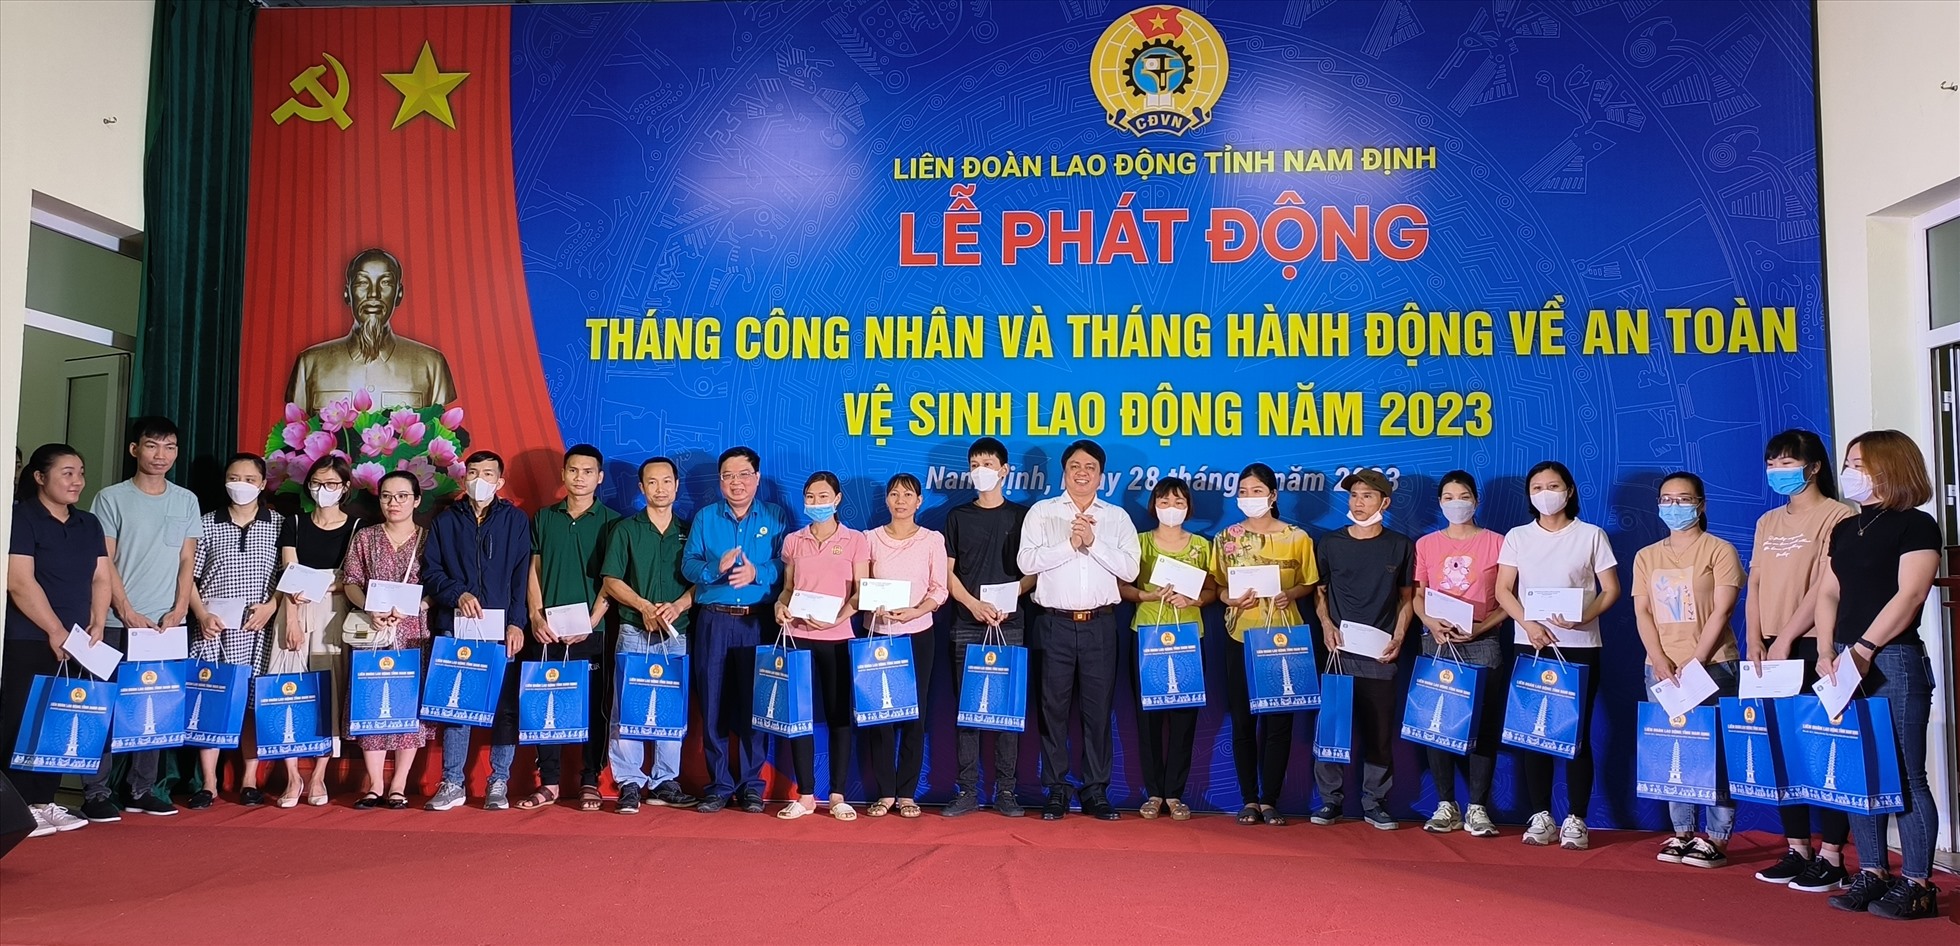 Lãnh đạo tỉnh Nam Định và lãnh đạo Liên đoàn Lao động tỉnh